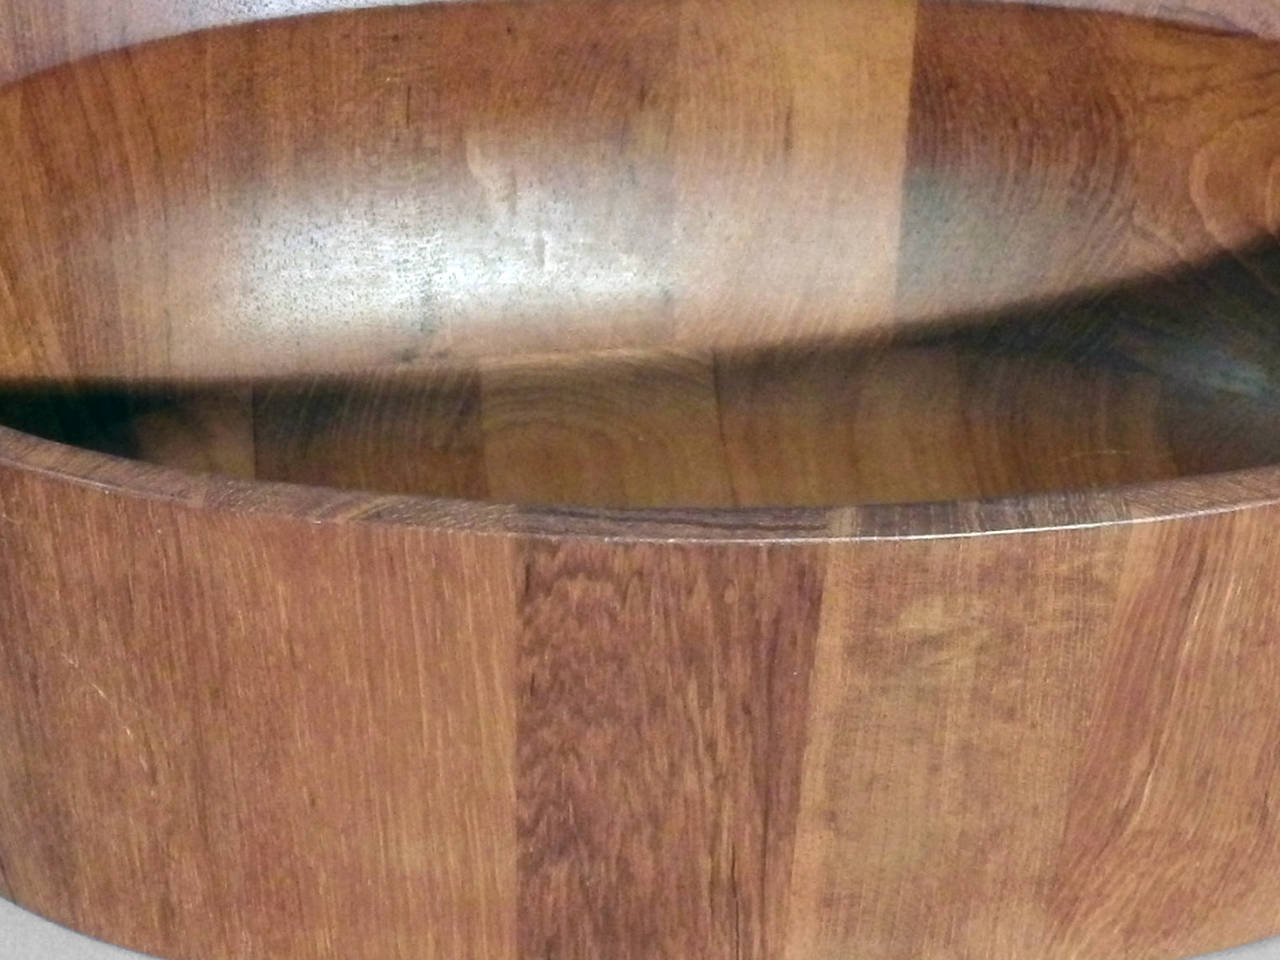 dansk wooden bowl